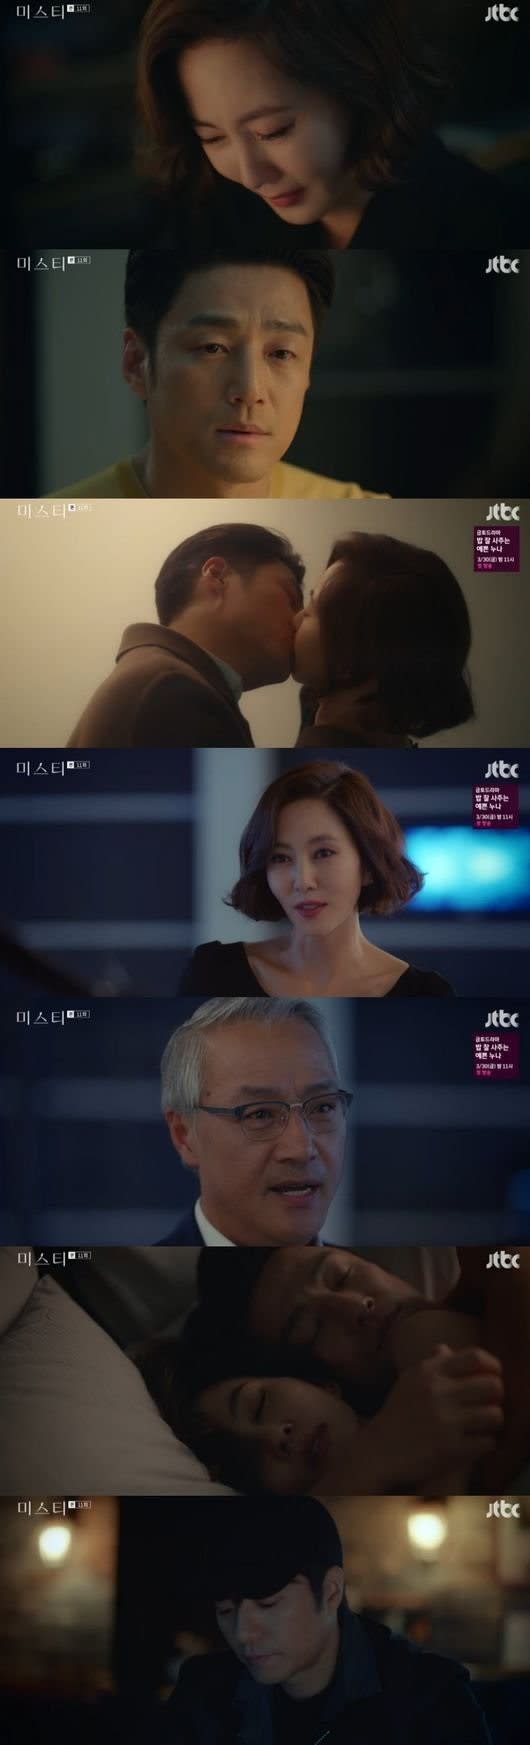 ミスティ キム ナムジュ チ ジニの離婚の助言もかかわらず 弁護士に再会 イ ギョンヨンと気力の戦い 韓国ドラマについて